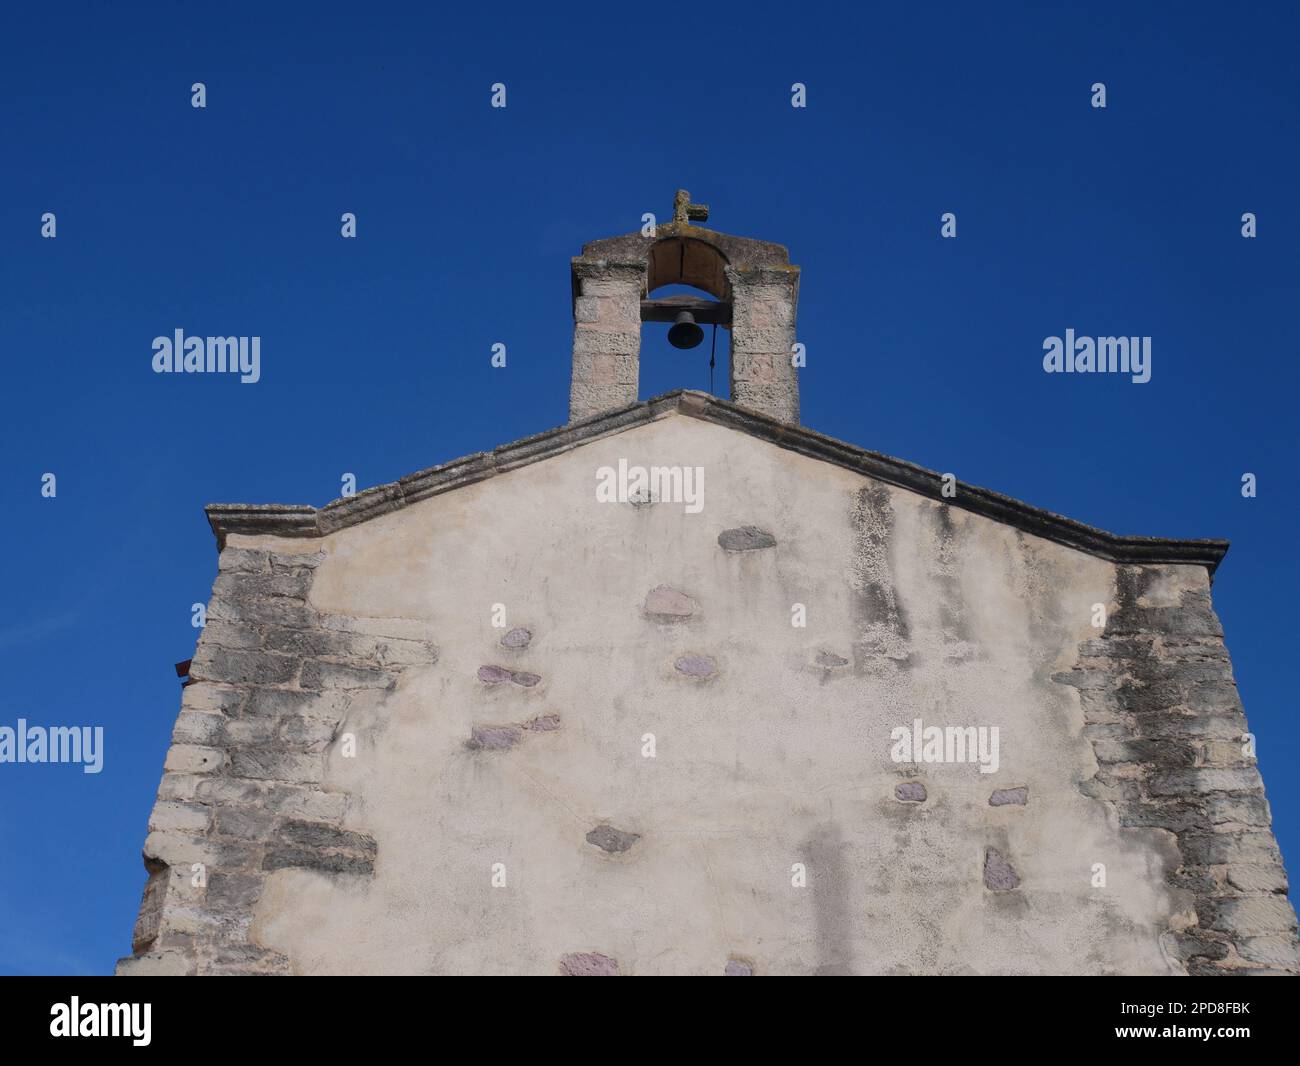 URI, Sardaigne, Italie. Église Santa Croce du XIIe siècle Banque D'Images